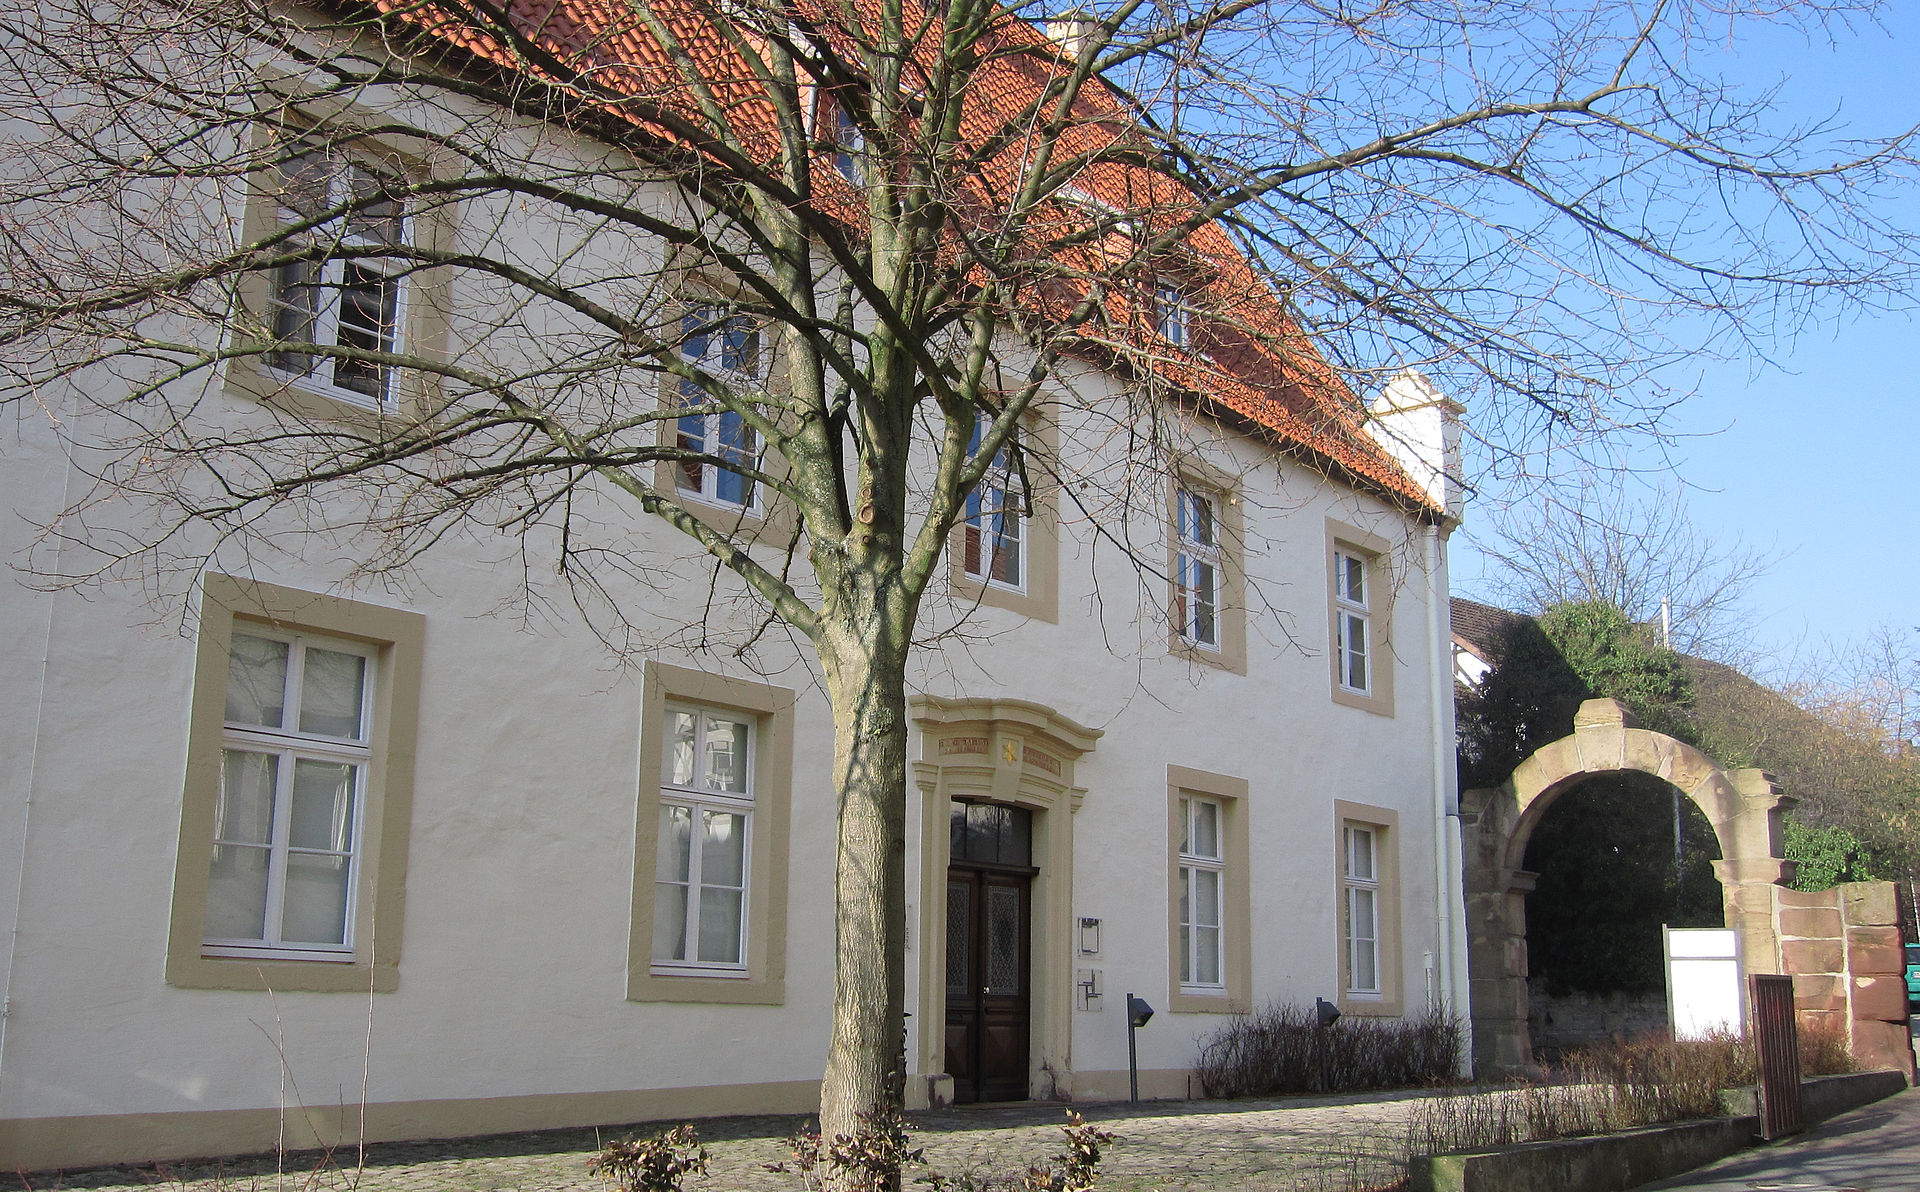 Bild Museum im Stern Warburg